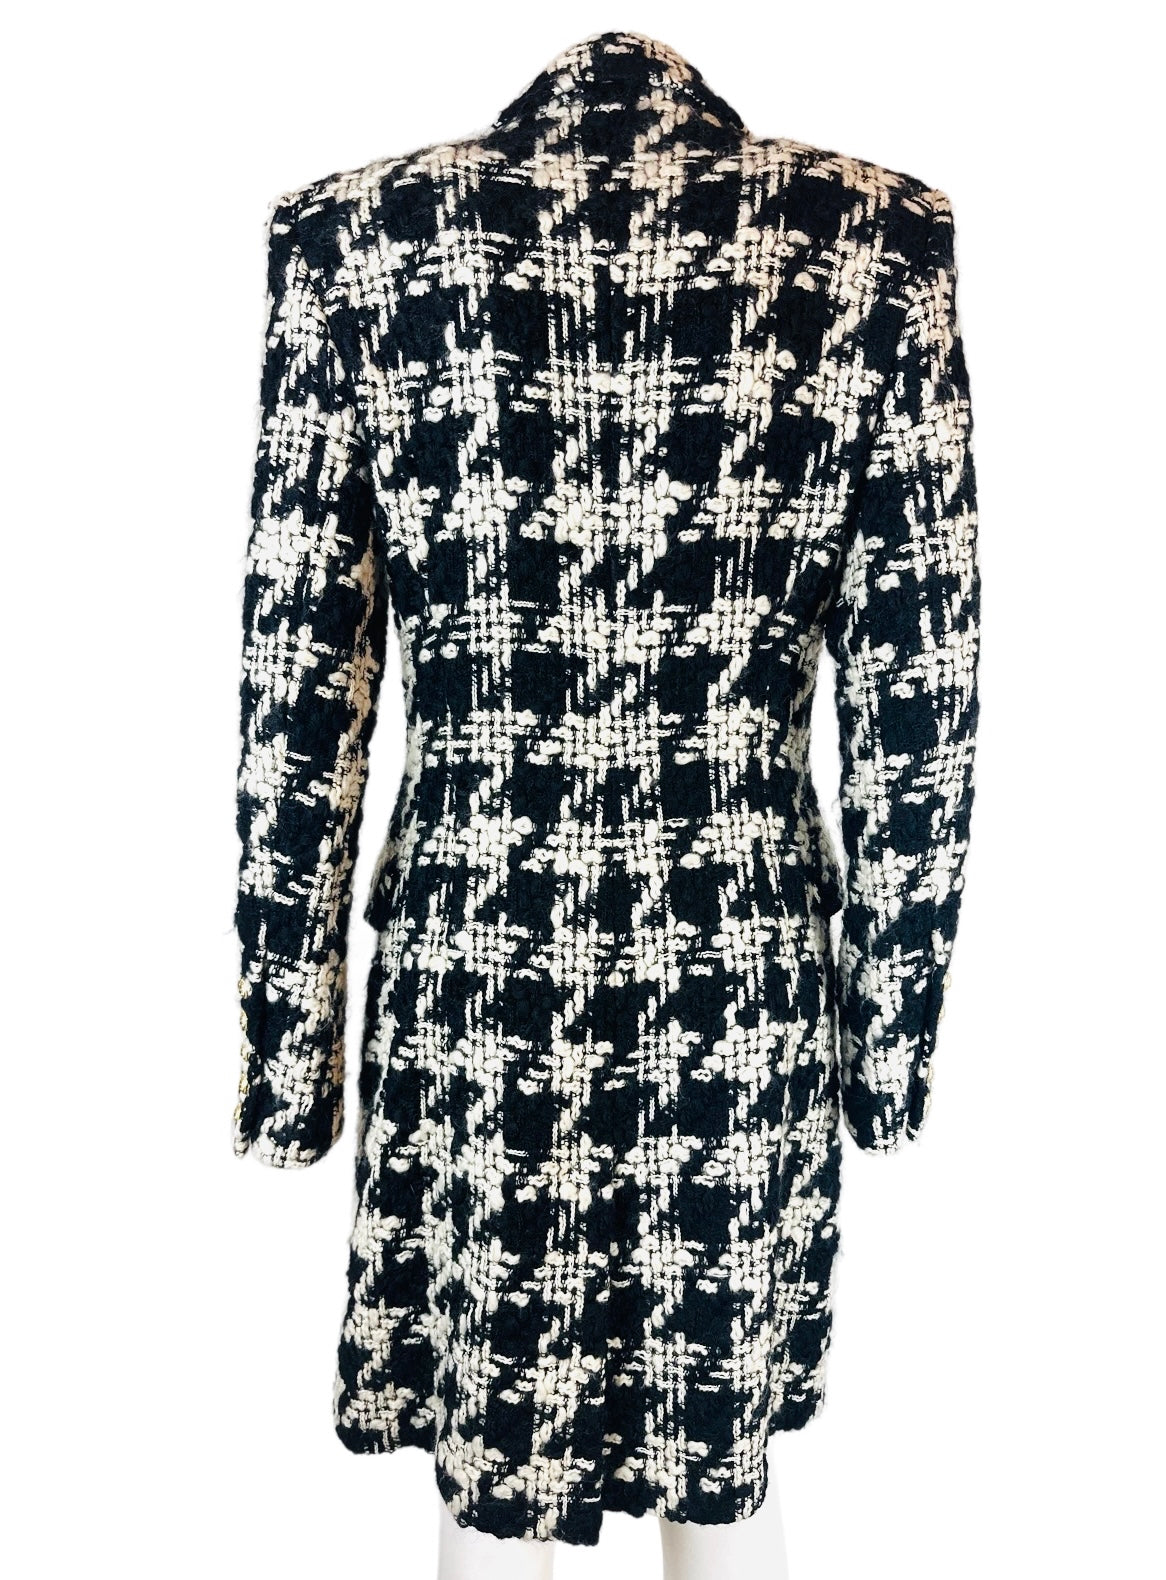 BALMAIN - Long coat tweed black & white size 38 FR